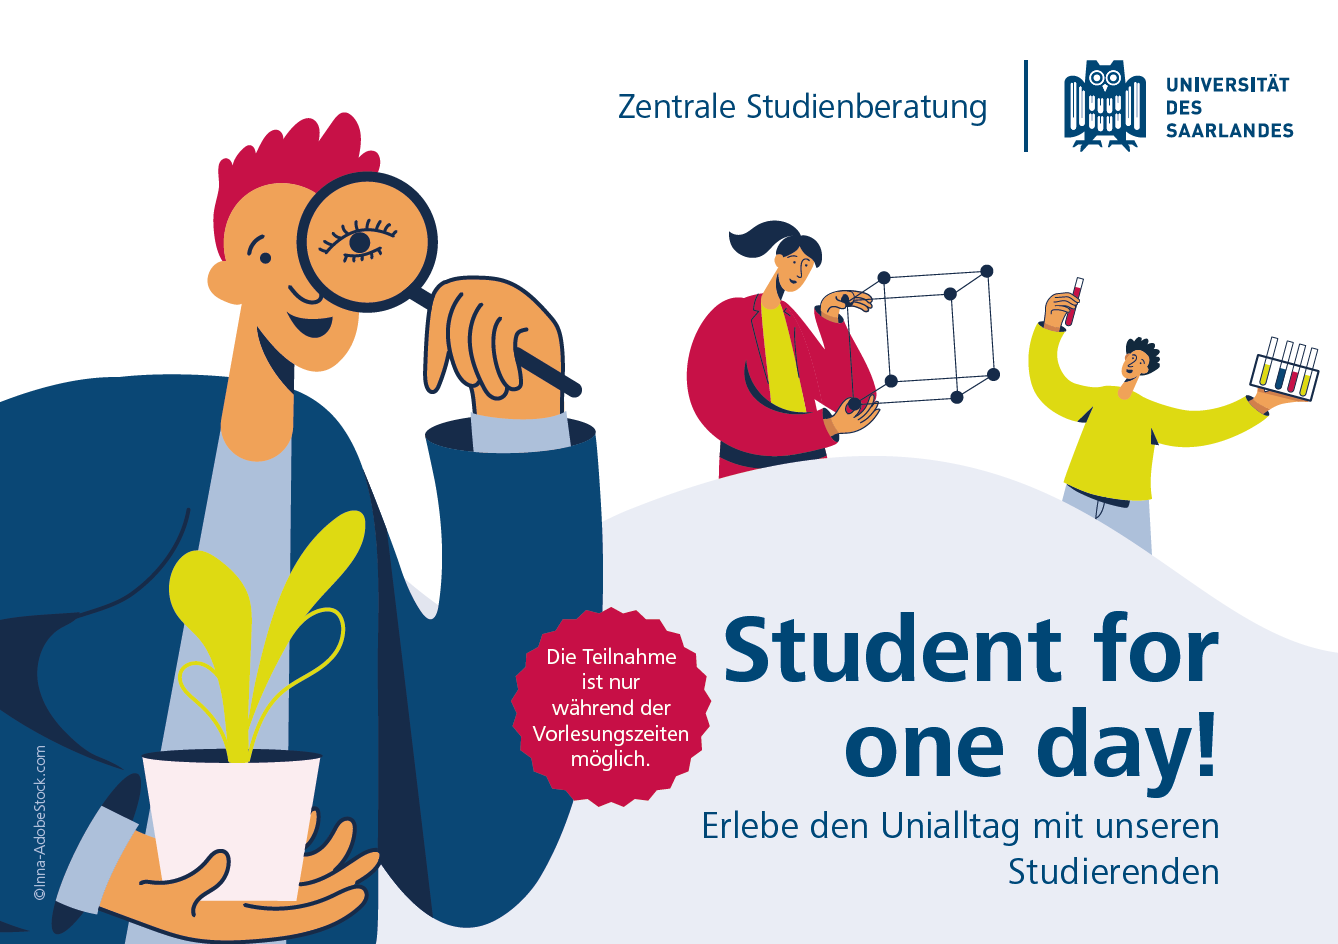 Student for one day! Erlebebe den Unialltag mit unseren Studierenden. Die Teilnahme ist nur während den Vorlesungszeiten möglich.